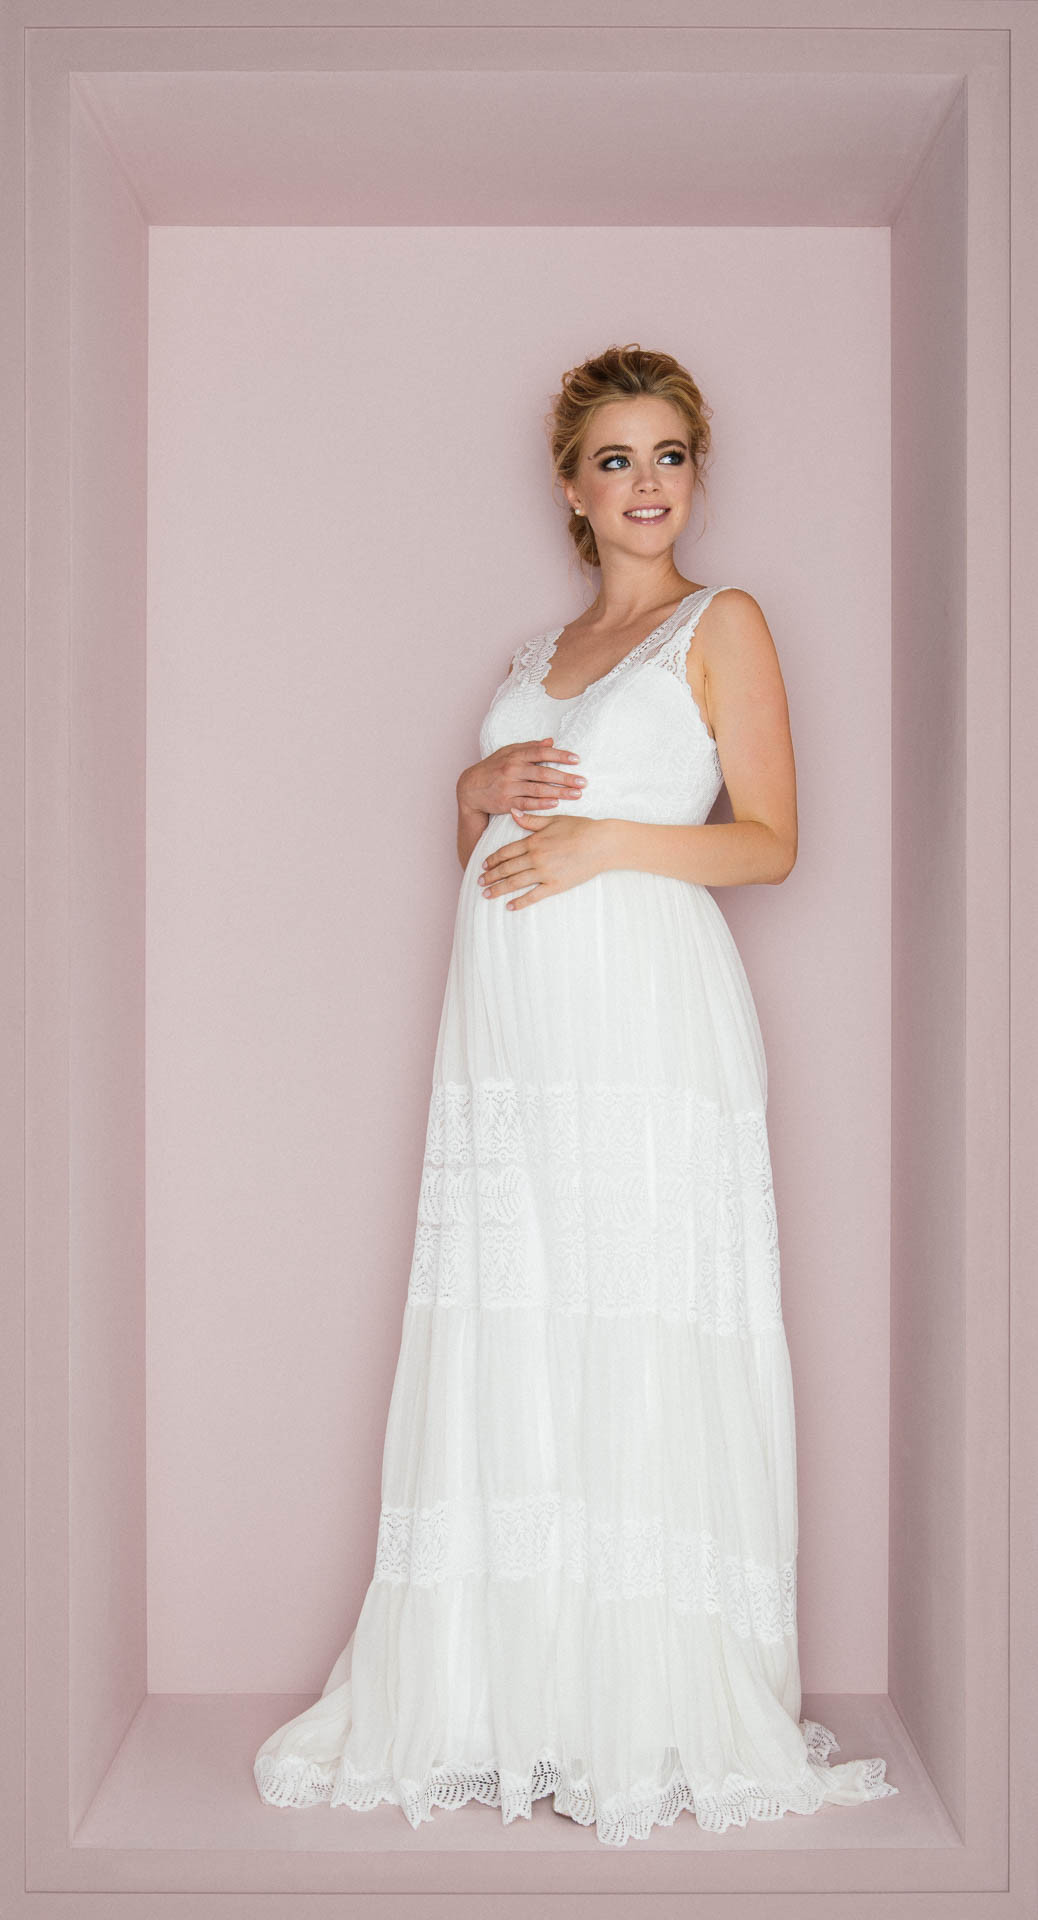 Hochzeitskleid Umstand
 Brautkleider für Schwangere – mit Tragekomfort & Stil